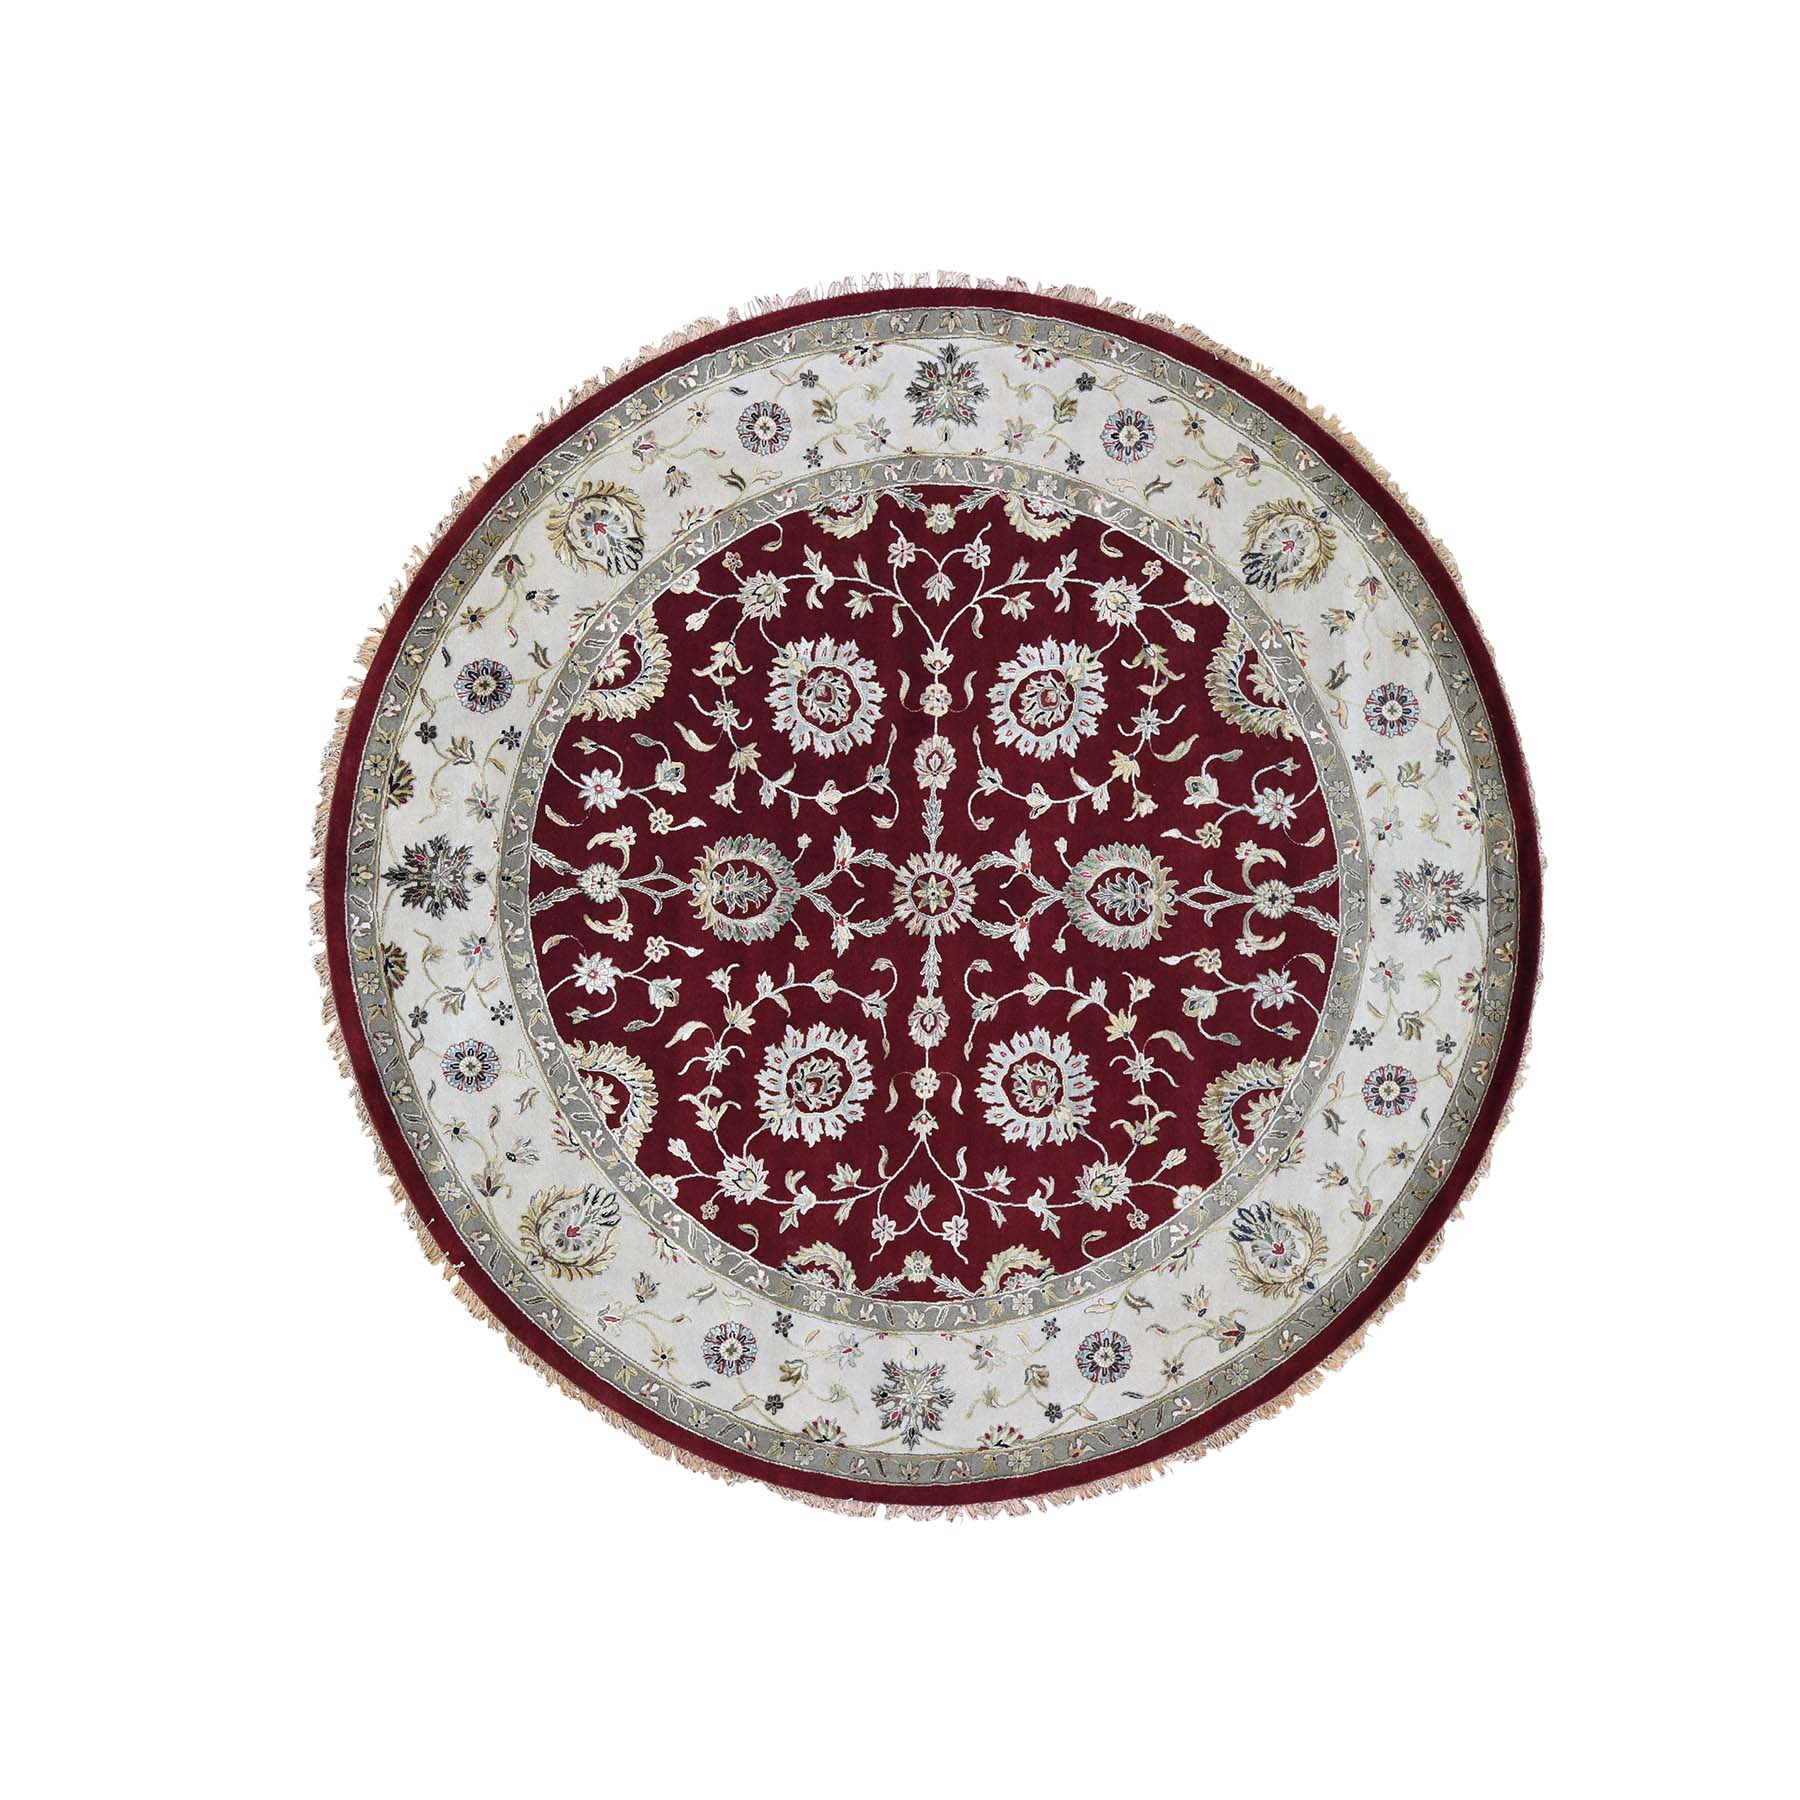 10'1"x10'1" Half Wool and Half Silk Burgundy Rajasthan Round Hand Woven Oriental Rug 